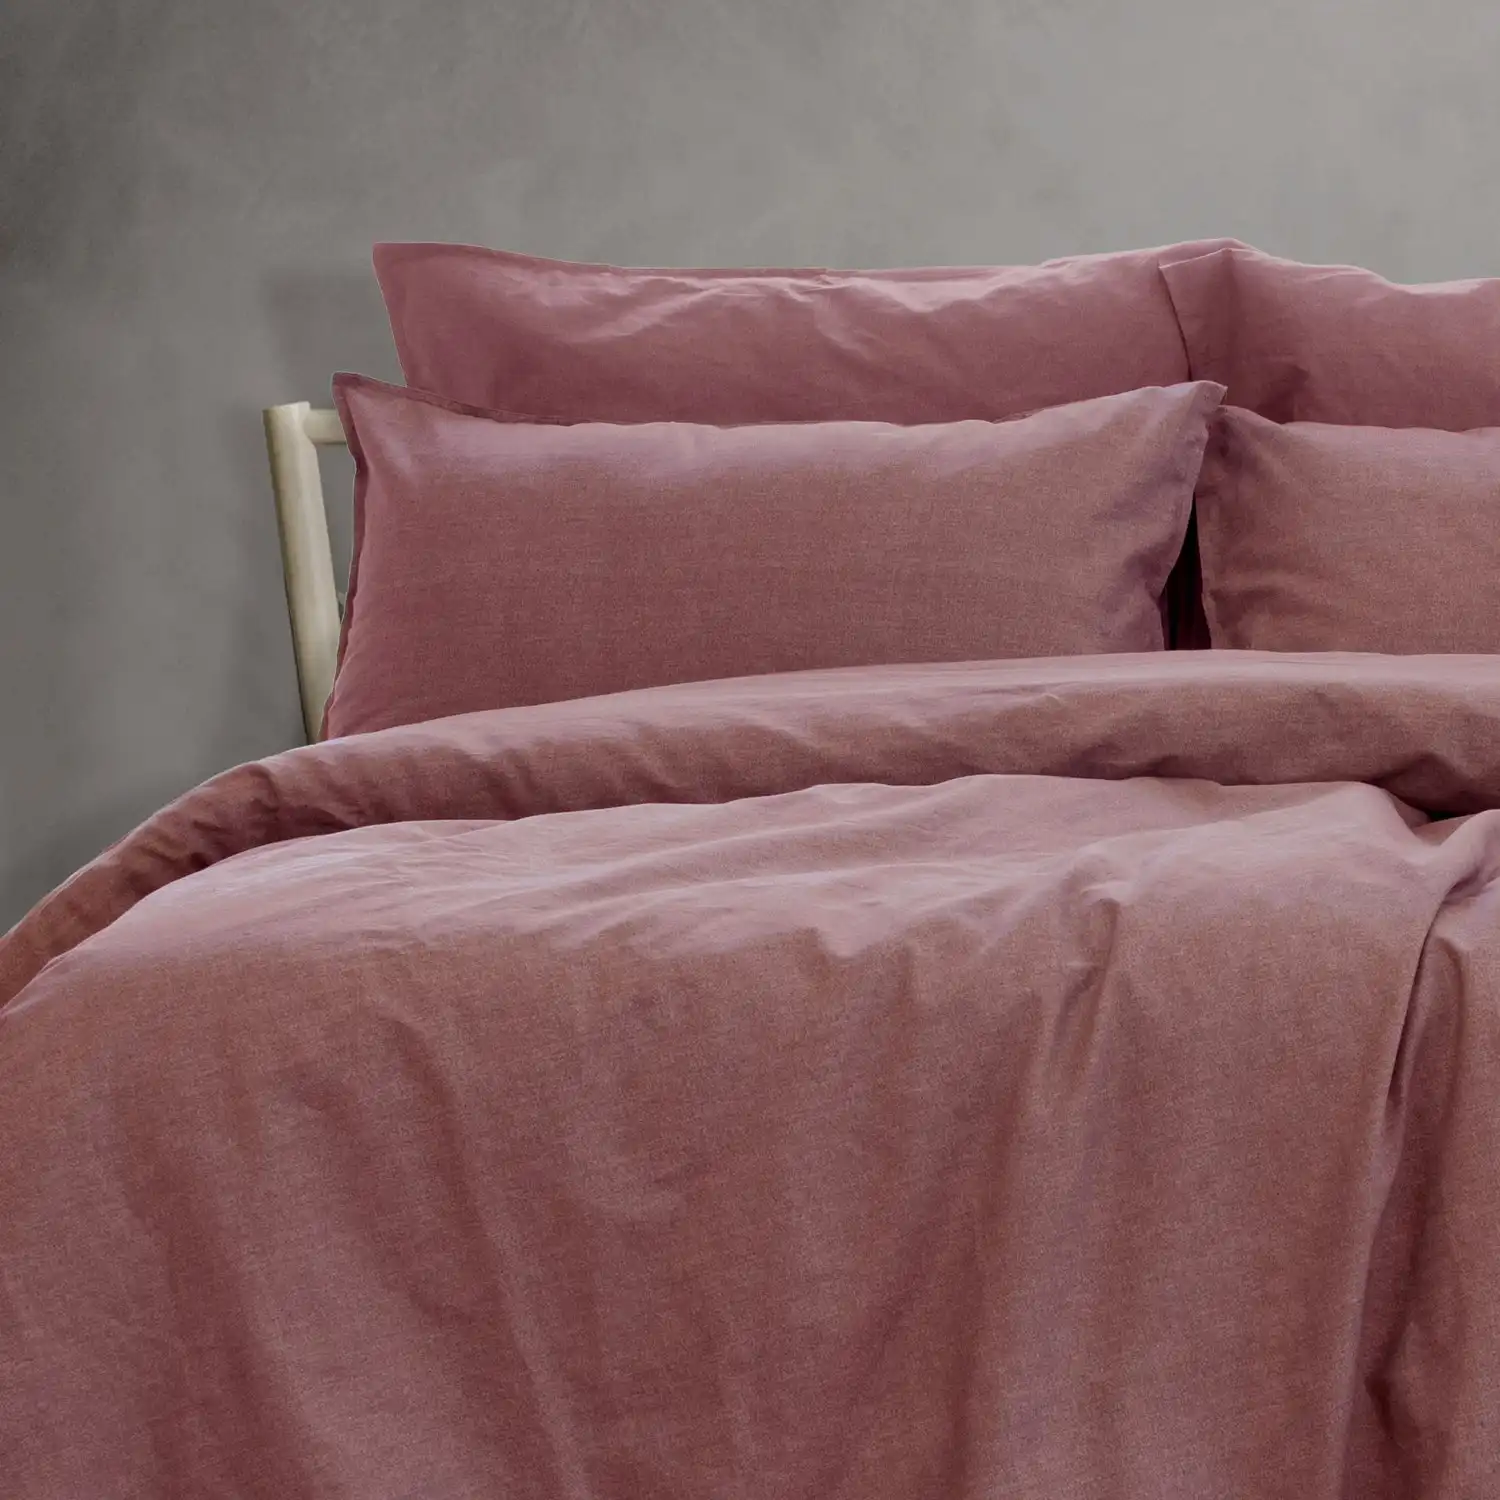 Ardor Boudoir Embre Queen Bed Cotton Quilt Cover Set Linen Look Washed Plum